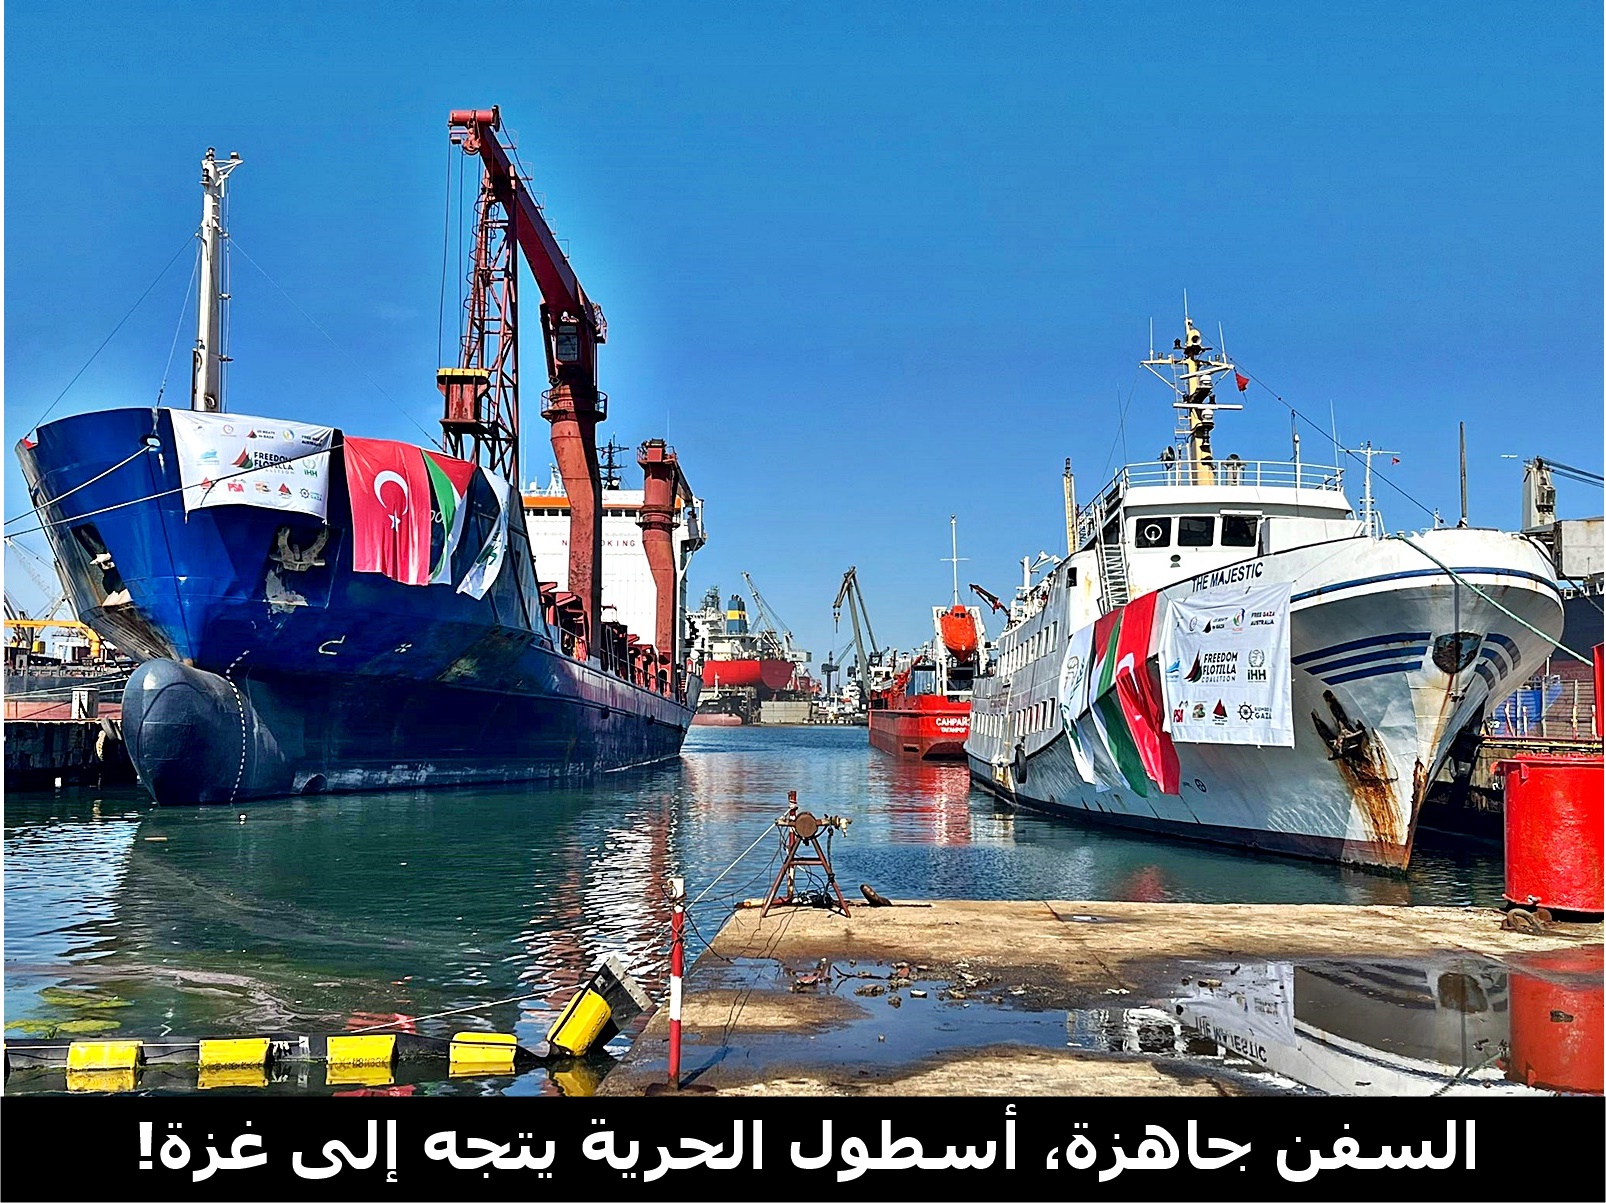 السفن جاهزة، أسطول الحرية يتجه إلى غزة!